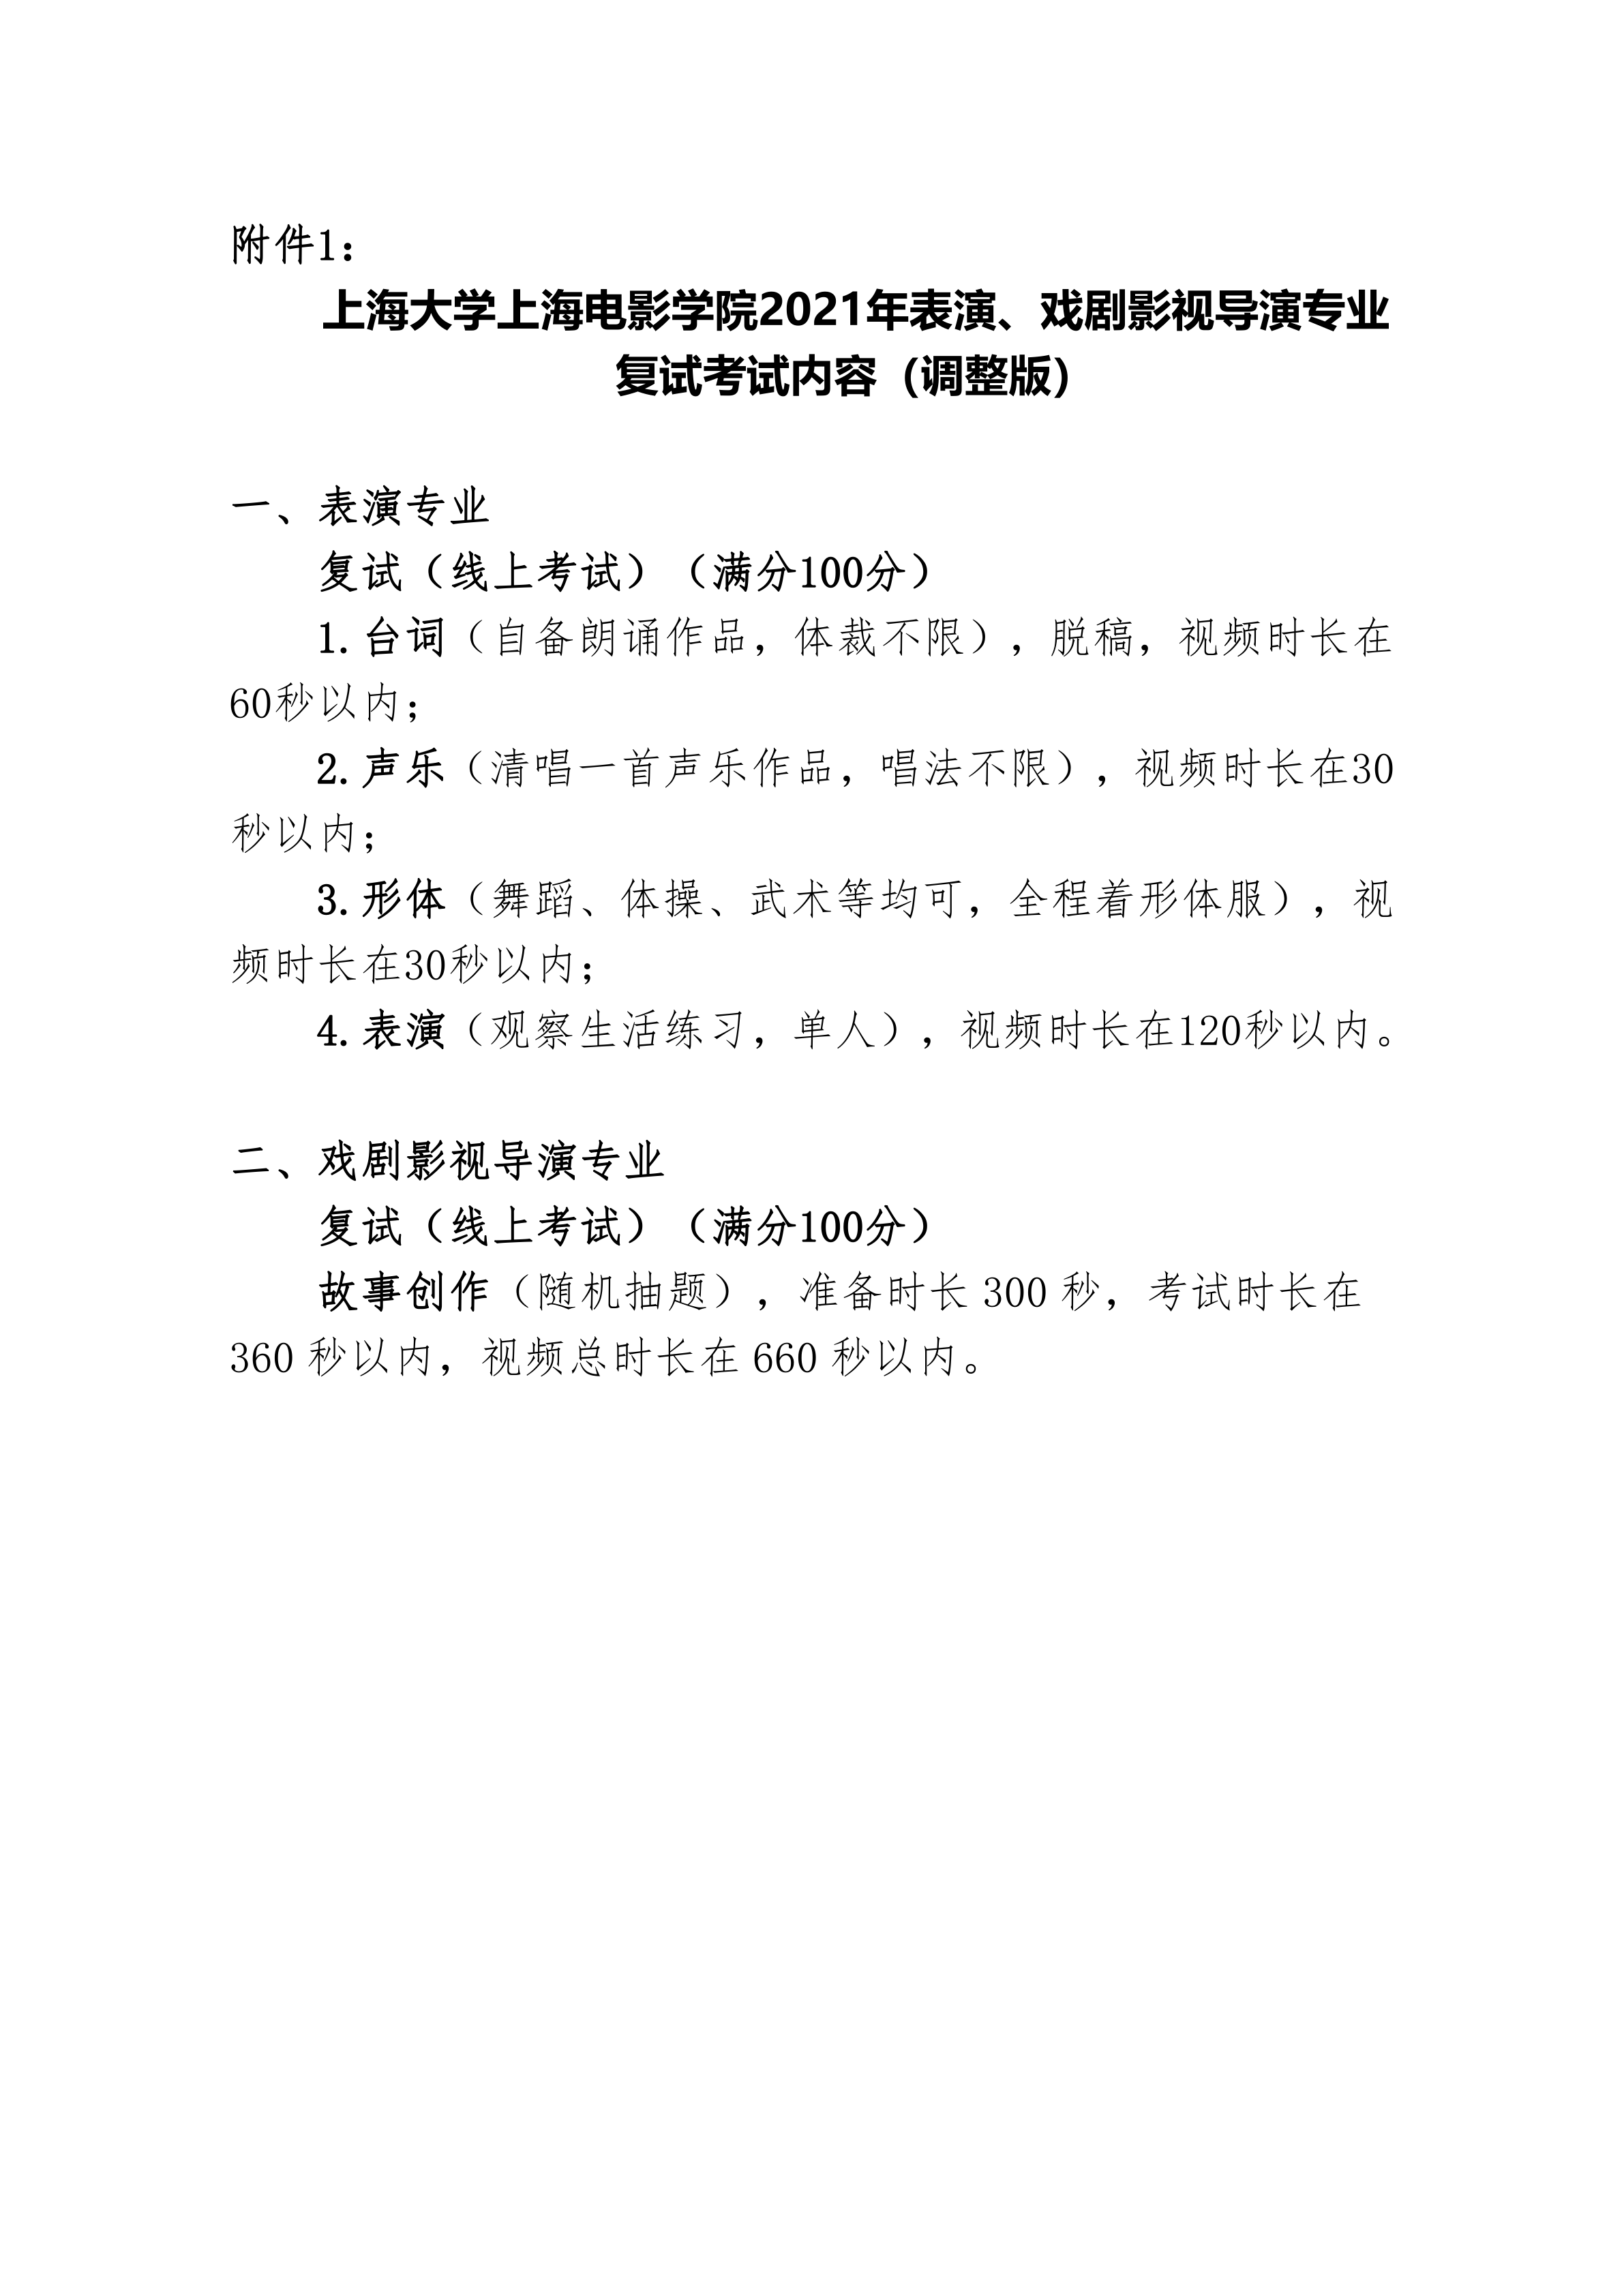 附件1：《上海大学上海电影学院2021年表演、戏剧影视导演专业复试考试内容（调整版）》_1.png